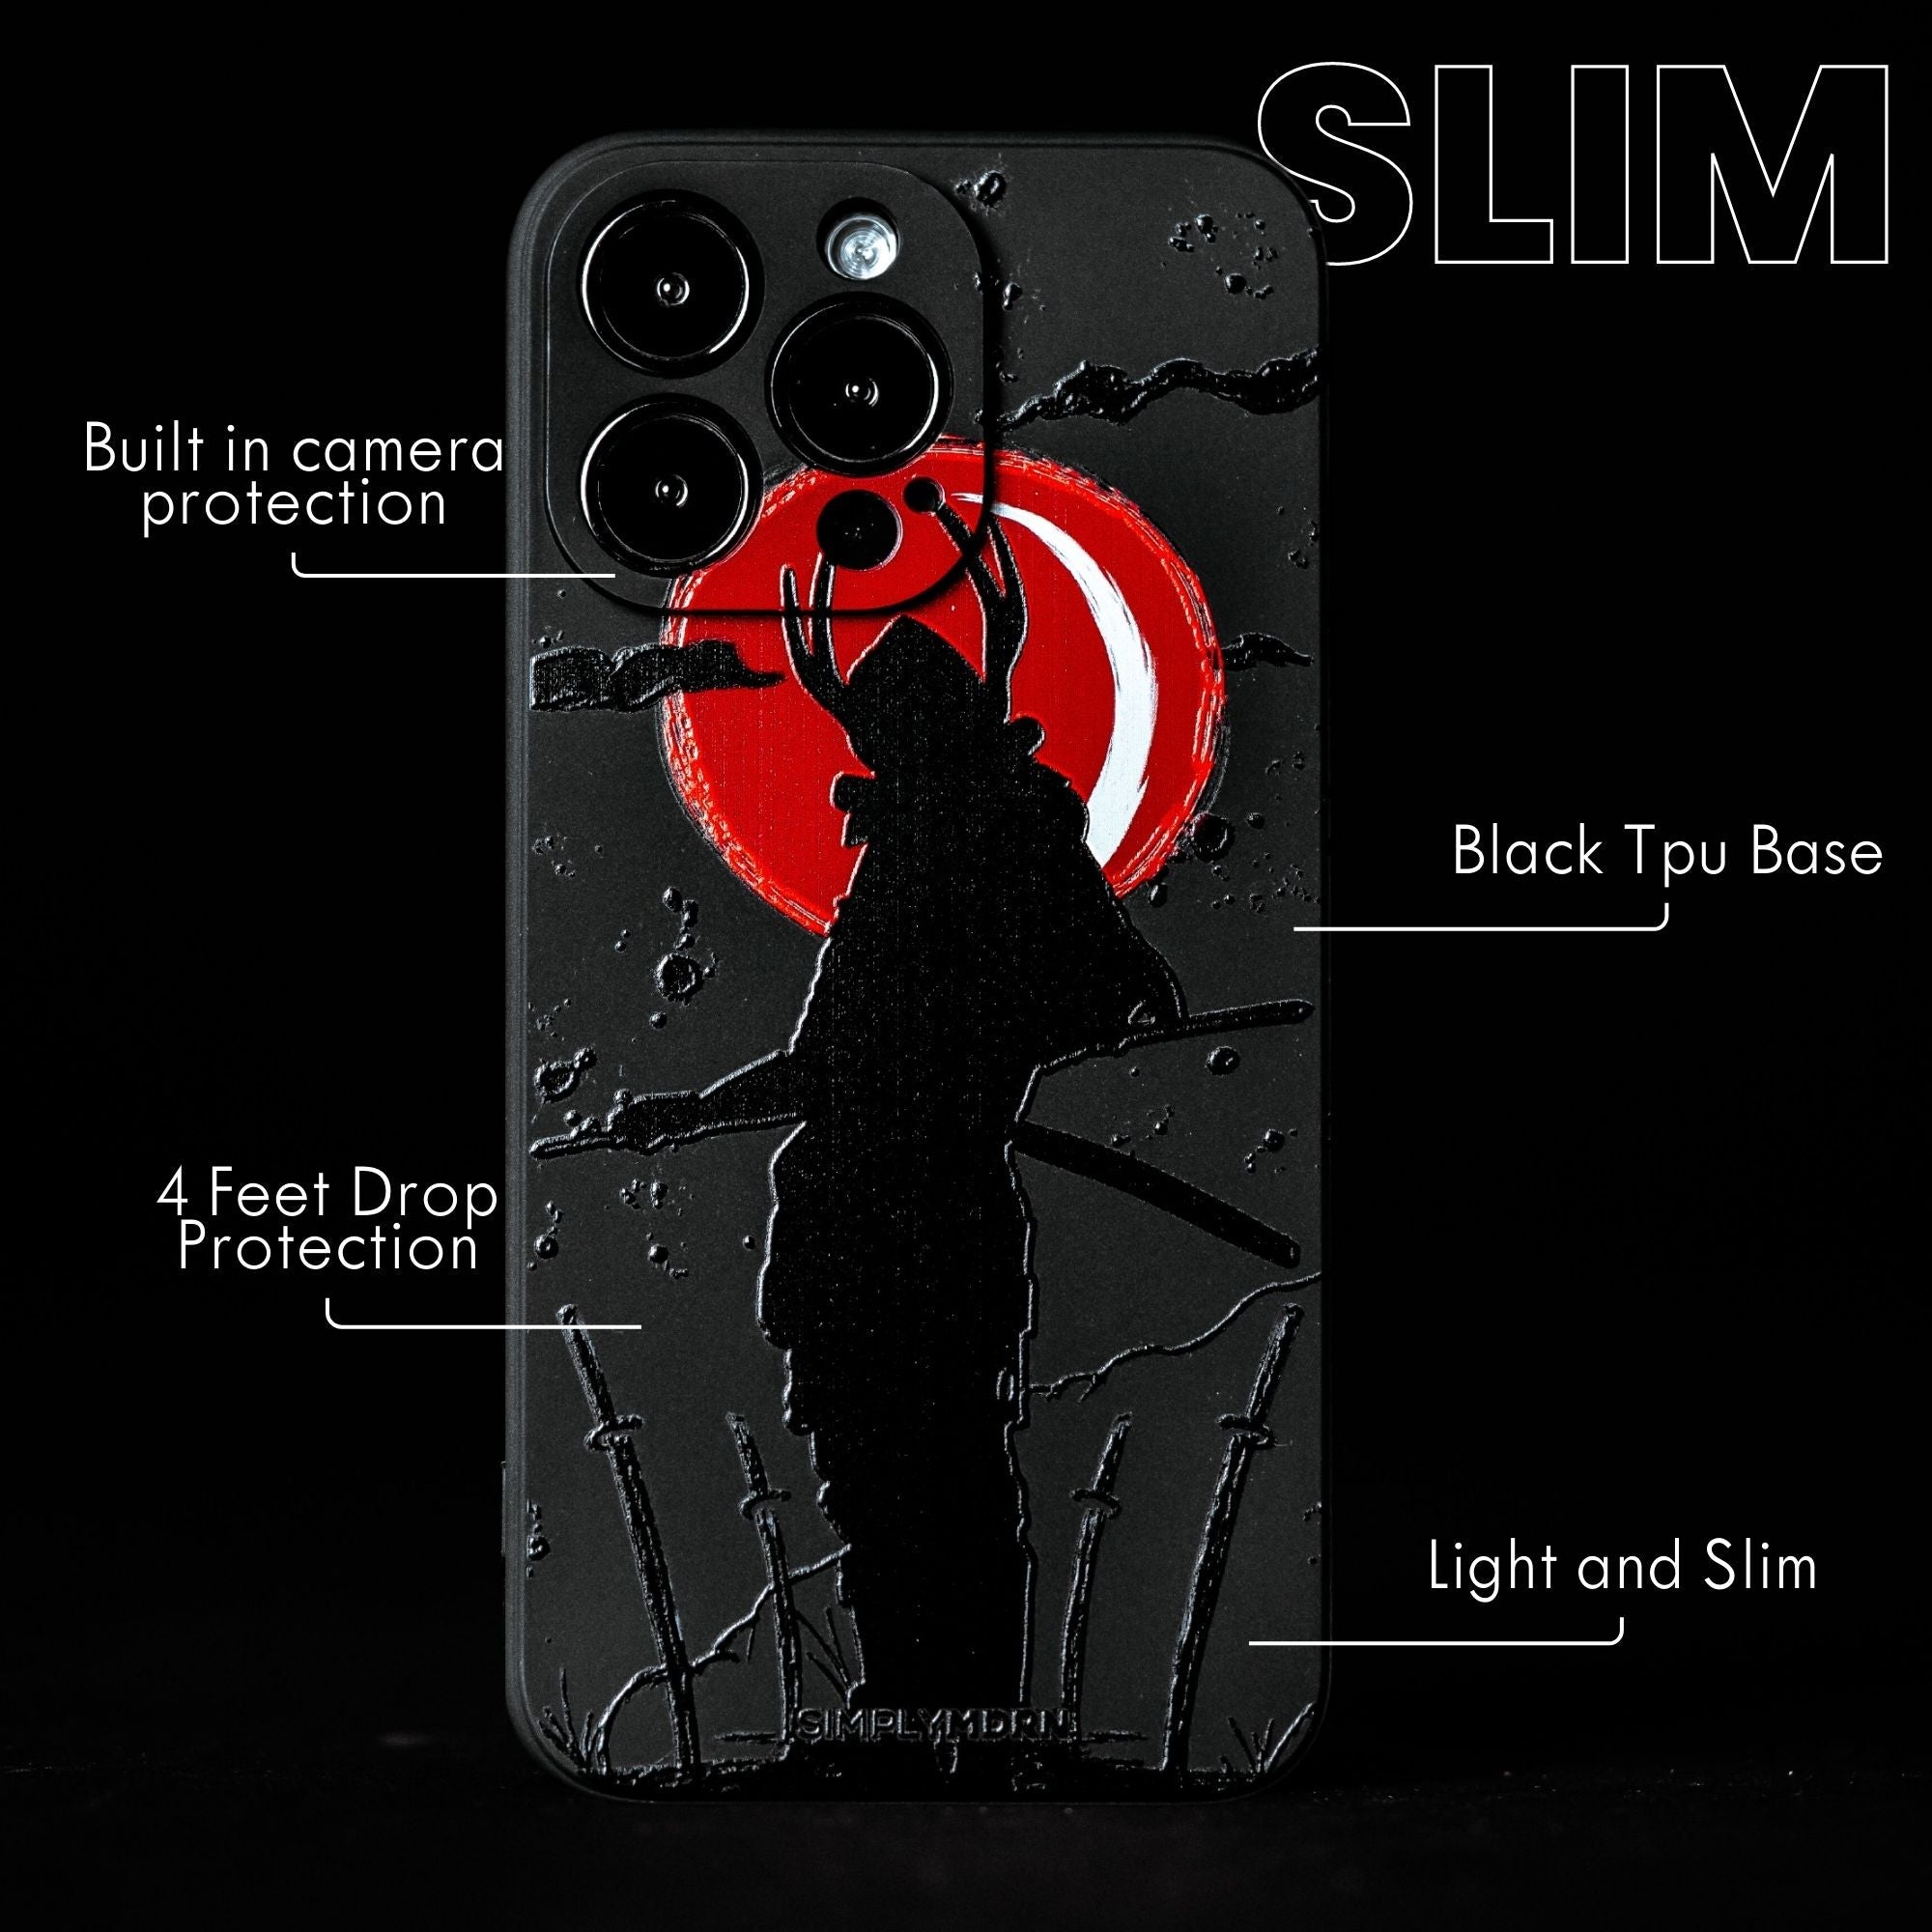 SAMURAI Slim iPhone case